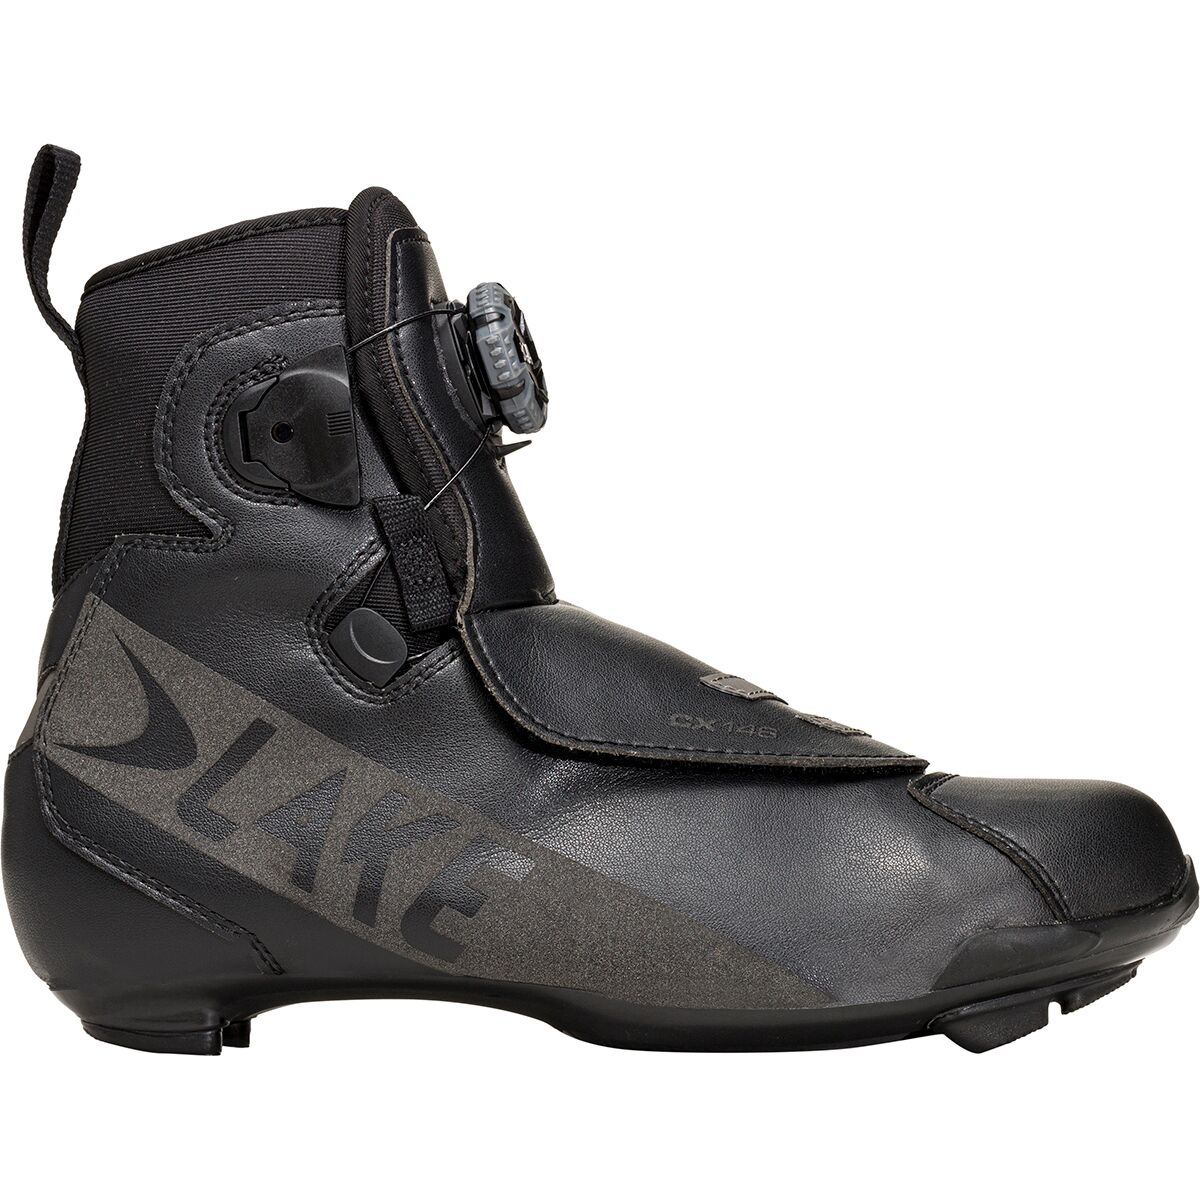 Lake CX146-X Wide Cycling Shoe - Men's